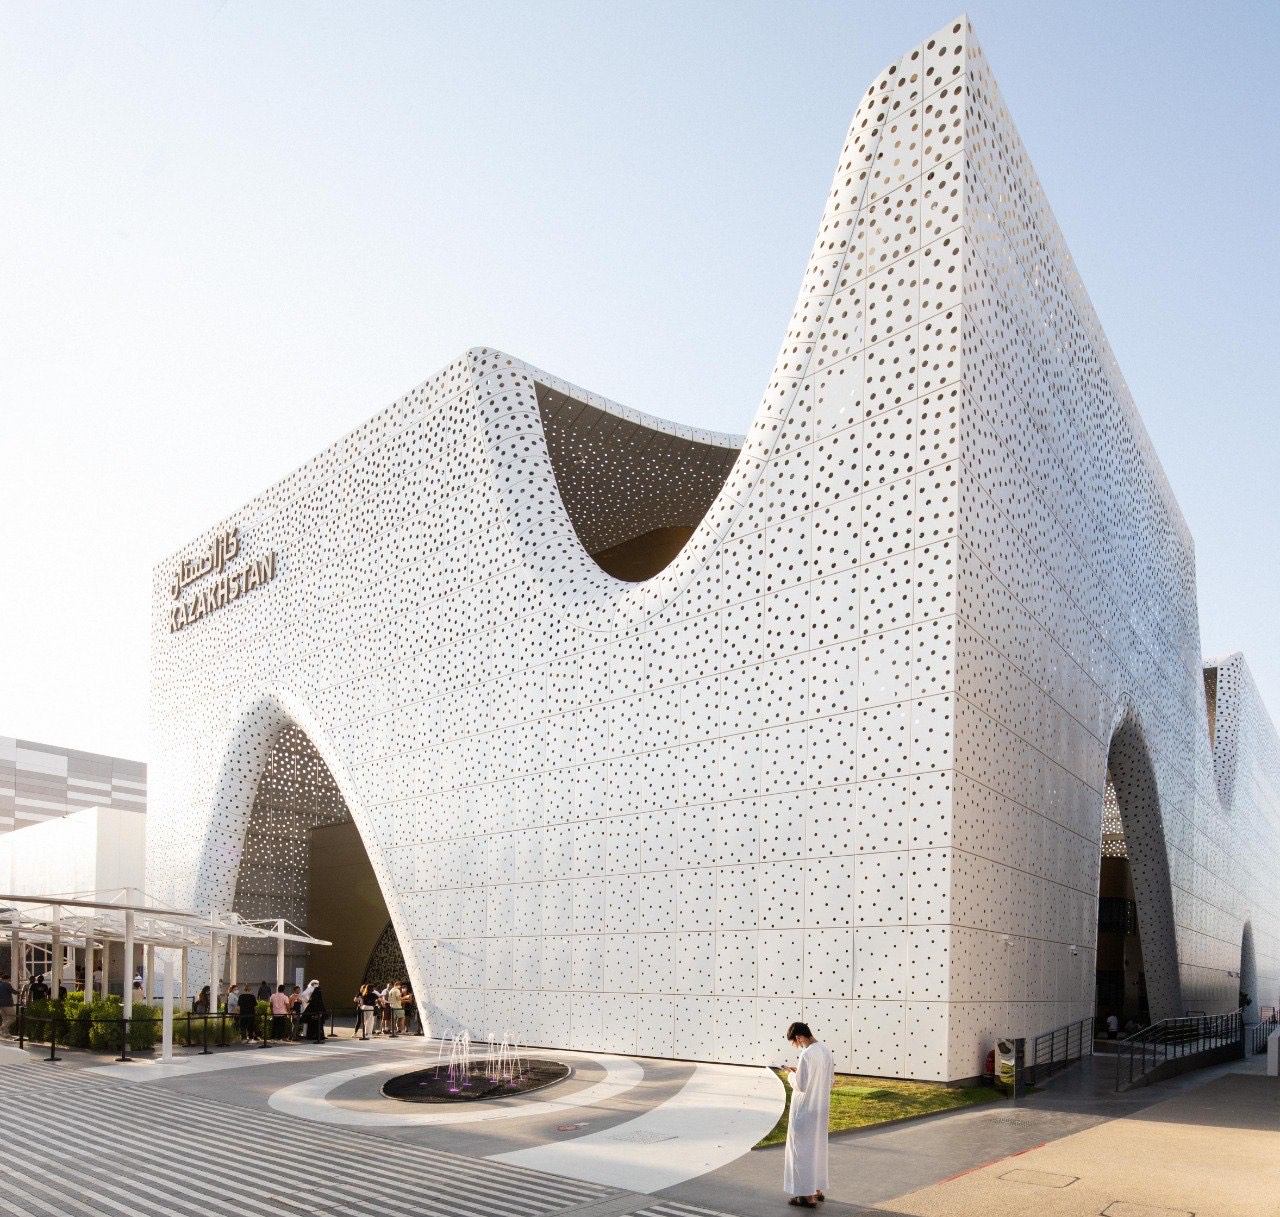 Қазақстан павильоны EXPO 2020 Dubai көрмесінде екінші үздік павильон болып танылды